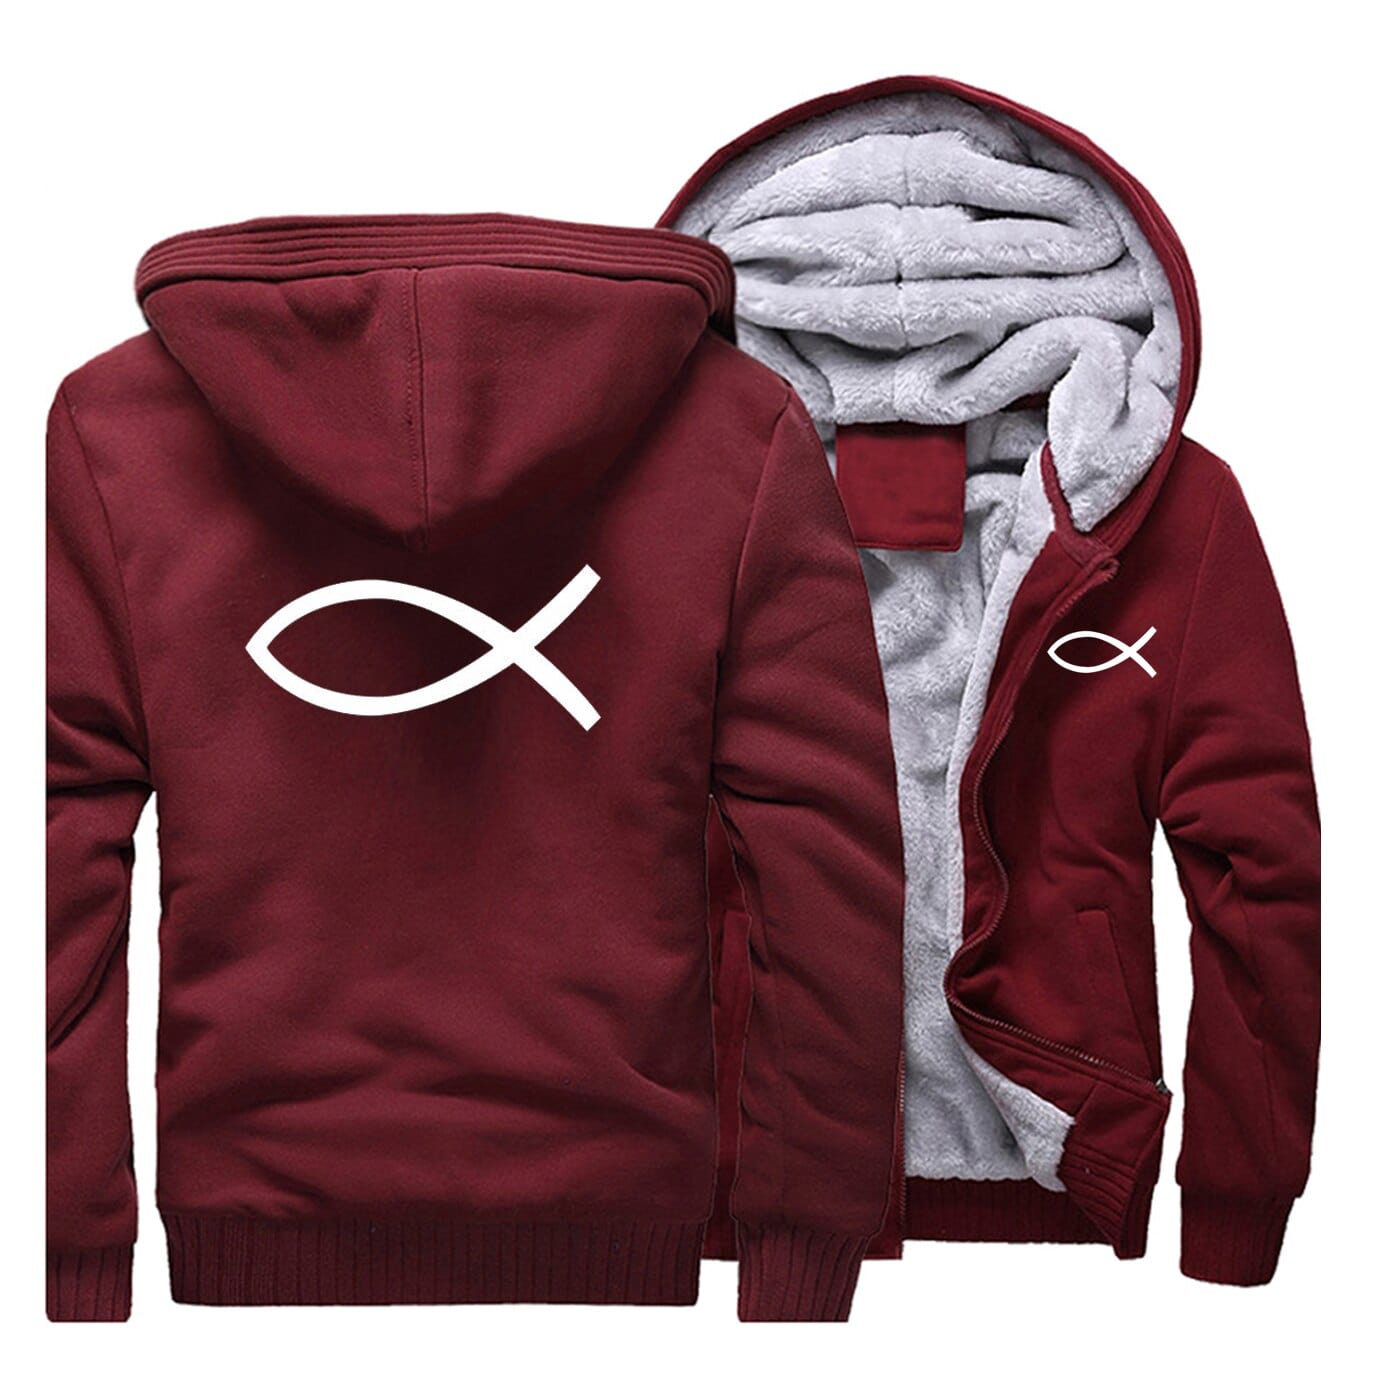 red-wine-ichthys-jacket